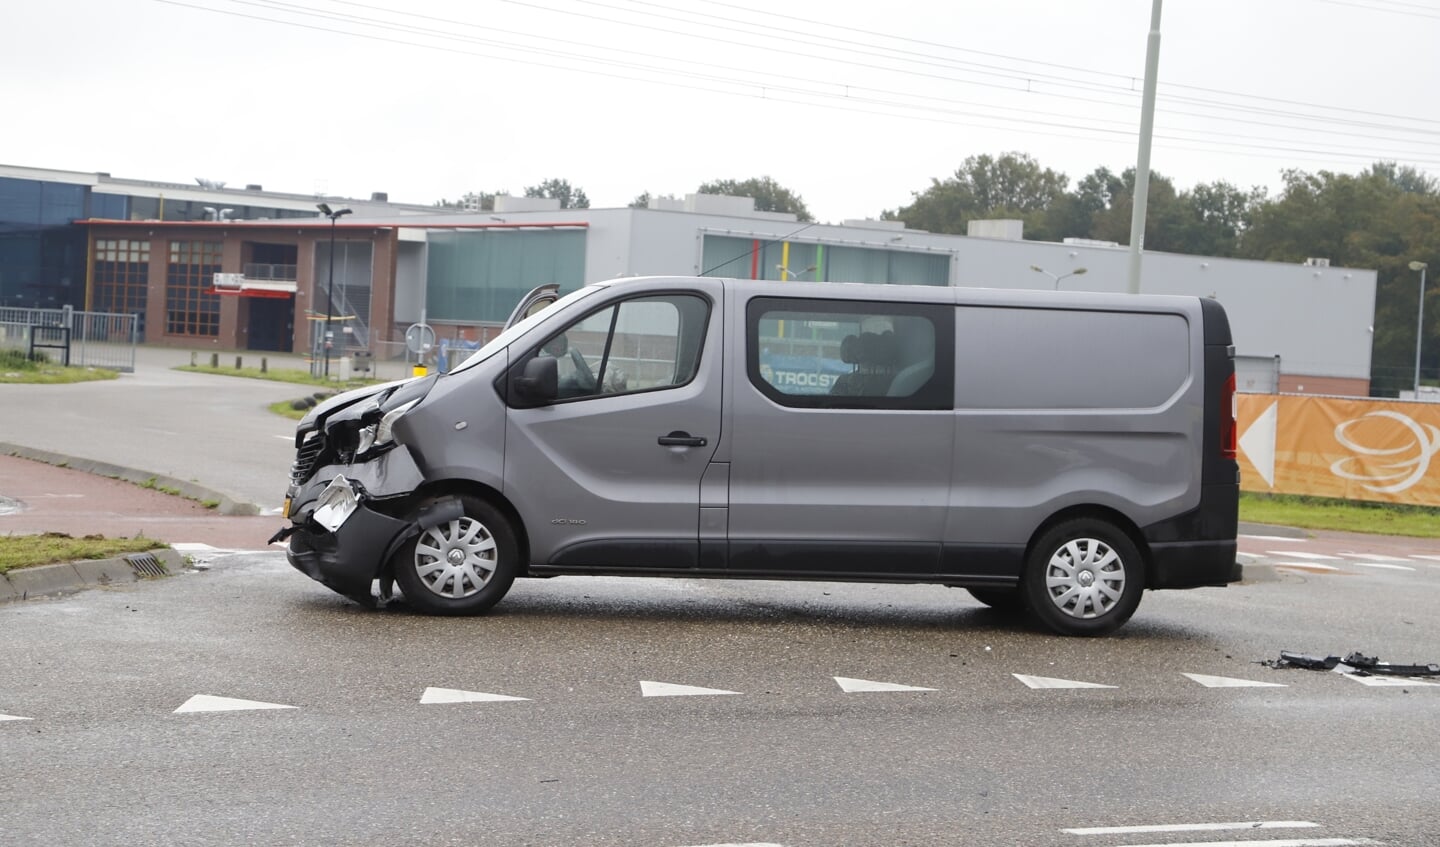 Ongeval op kruising aan De Voorde in Oostrum. 